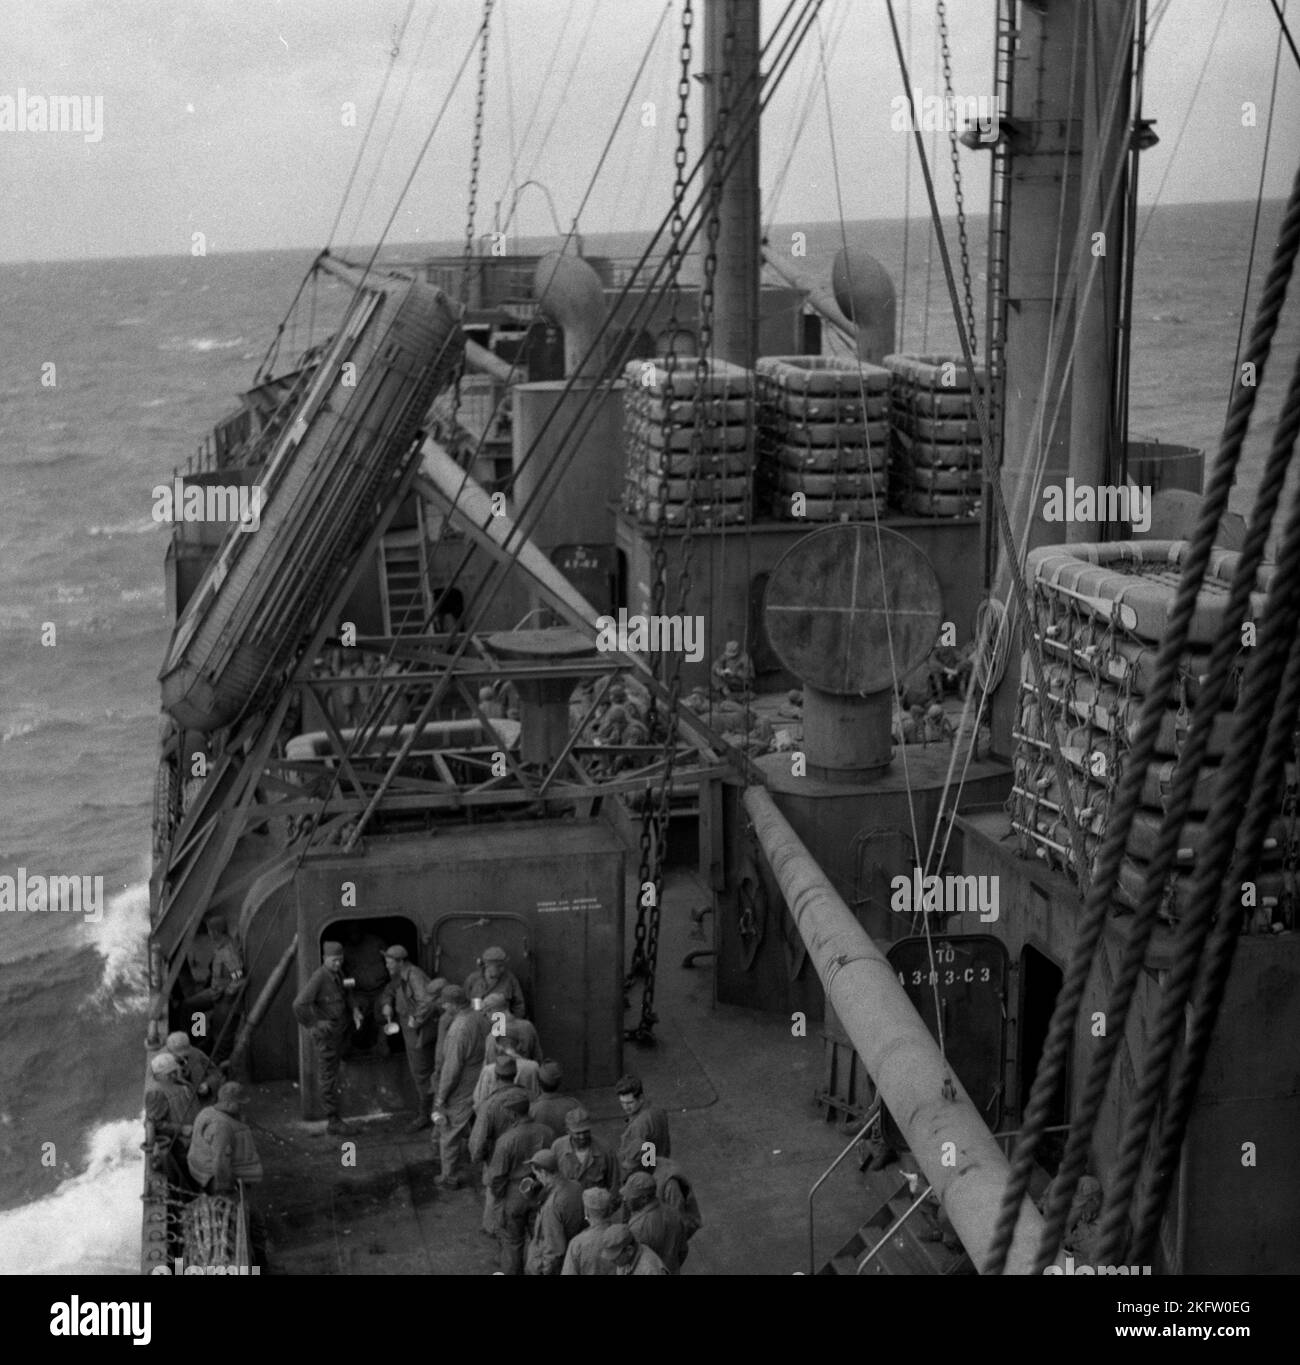 Männer, die an Deck eines Schiffes in der Schlange stehen. Veteranen der United States Army kommen nach dem Zweiten Weltkrieg auf dem Elgin Victory Schiff nach Hause SS Elgin Victory, ein von Permanente Metals gebautes Schiff vom Typ VC2-S-AP2 Victory Stockfoto